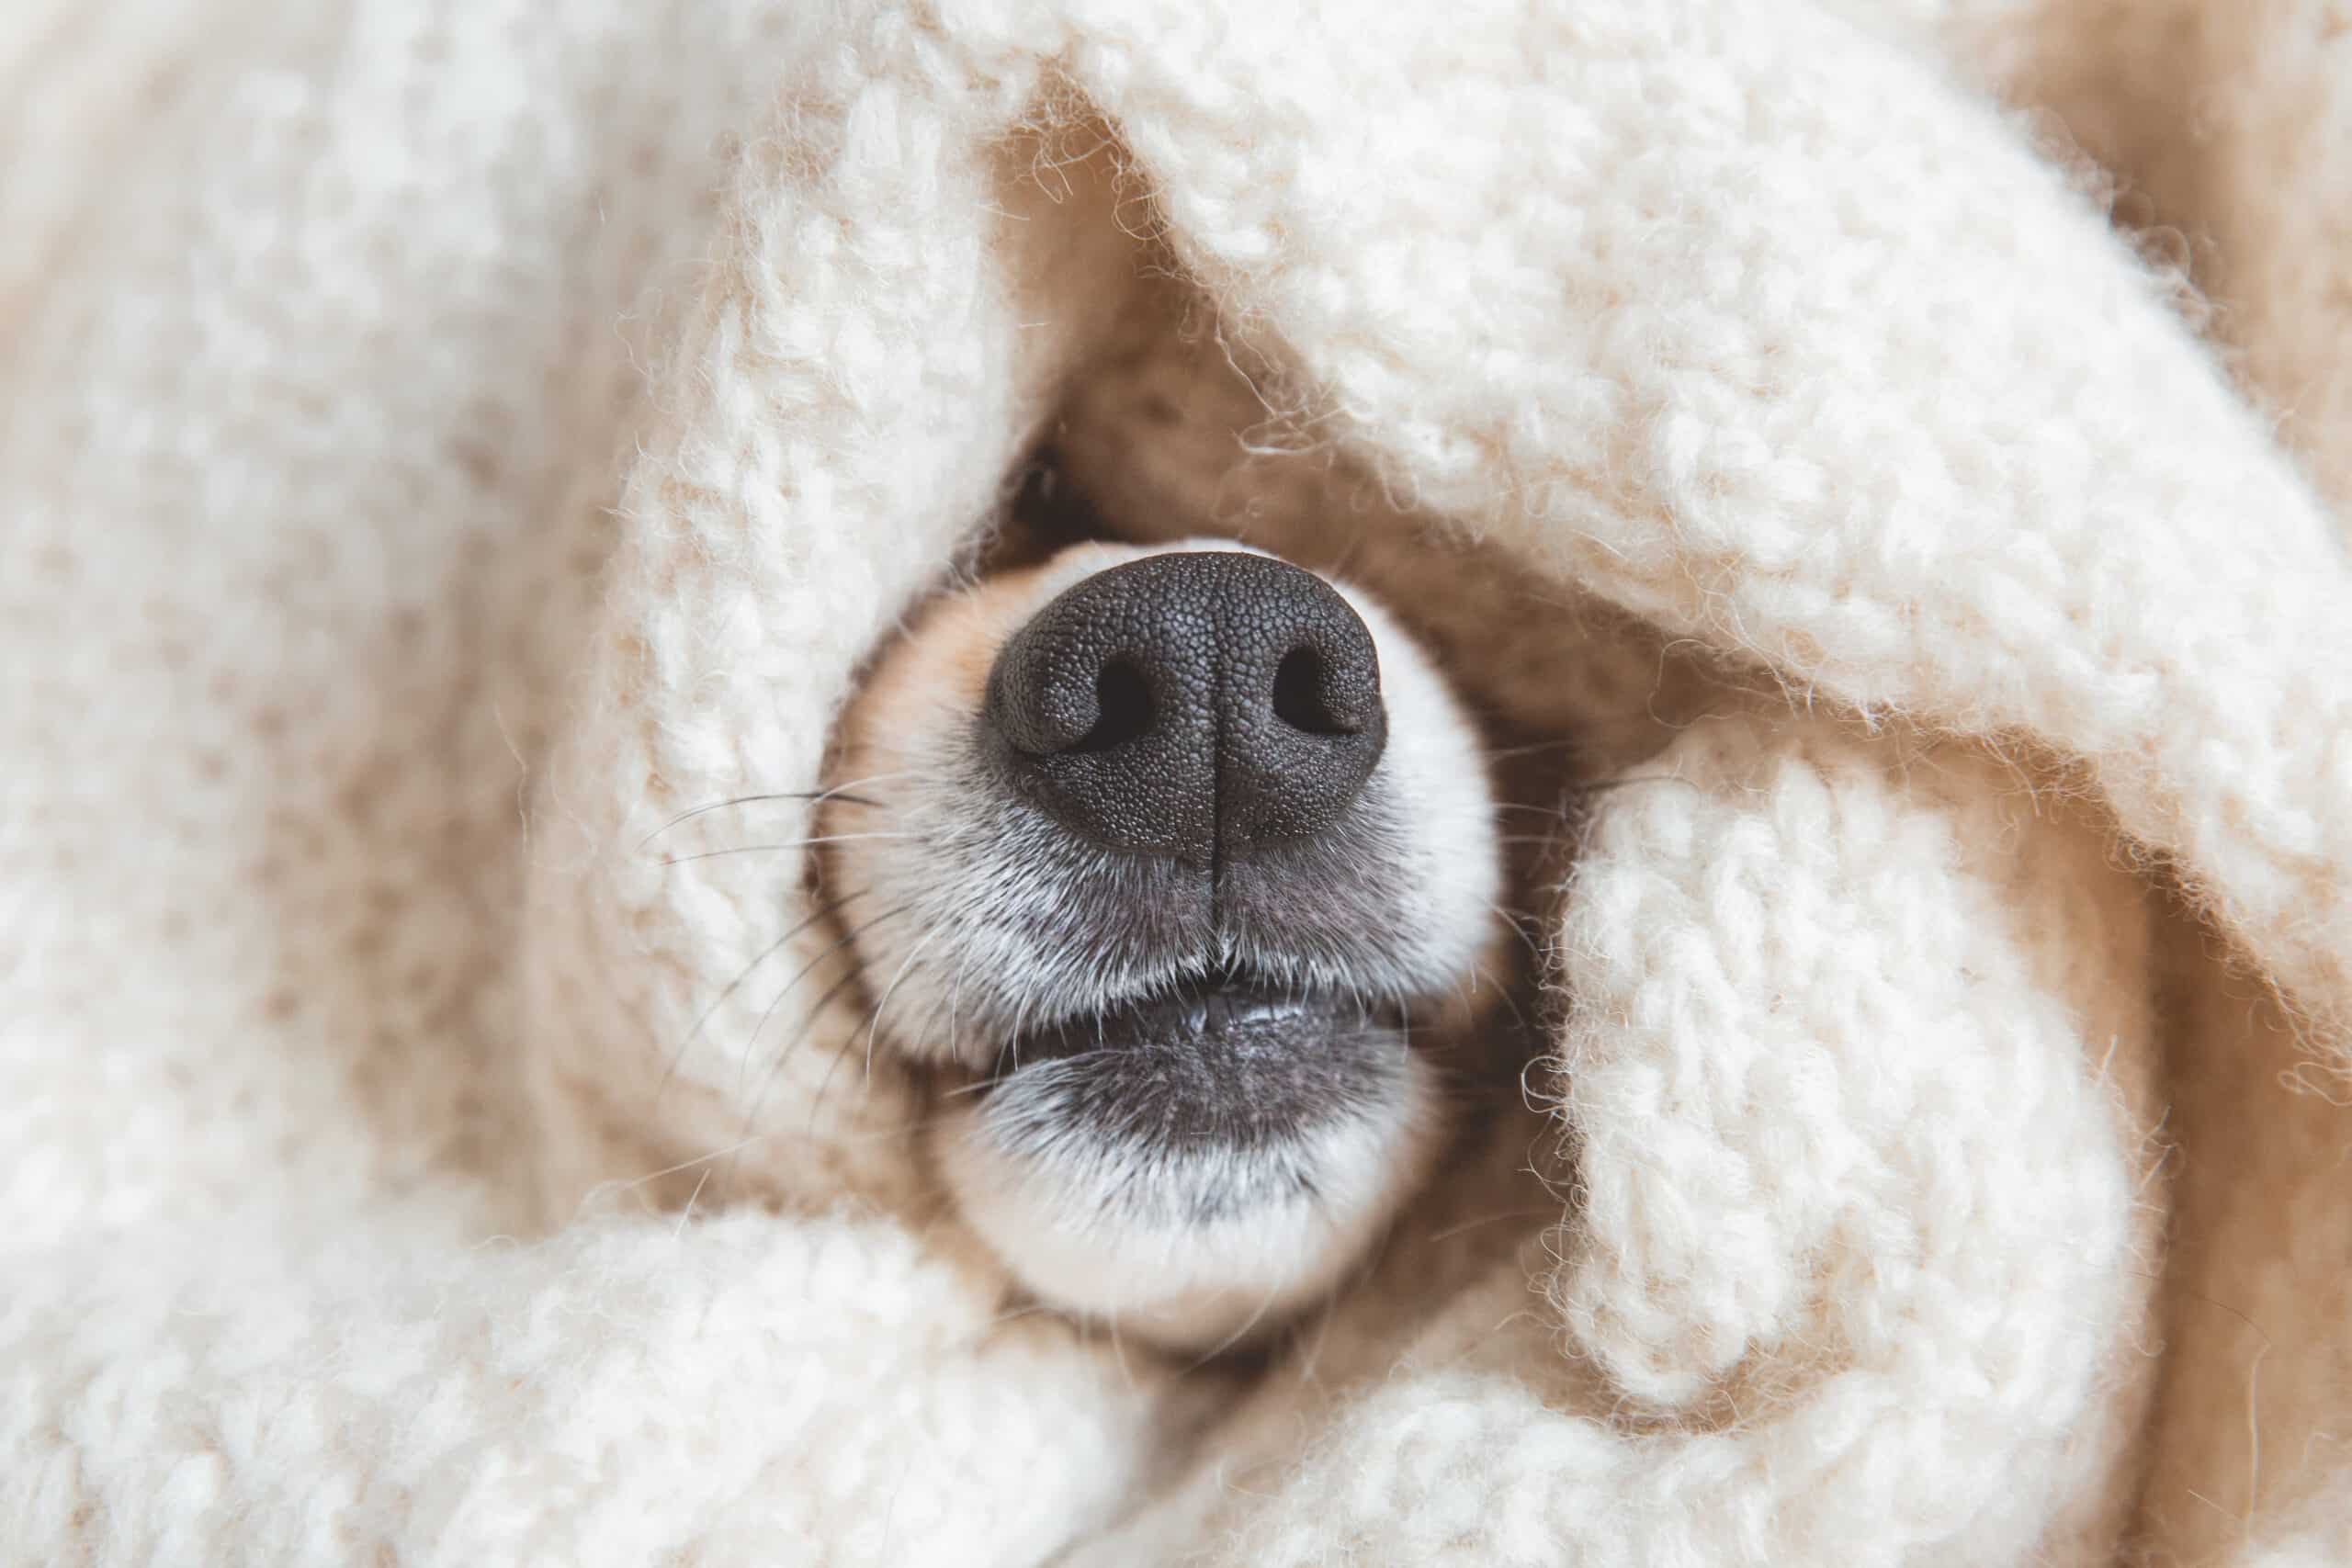 Dog snuggled in blanket